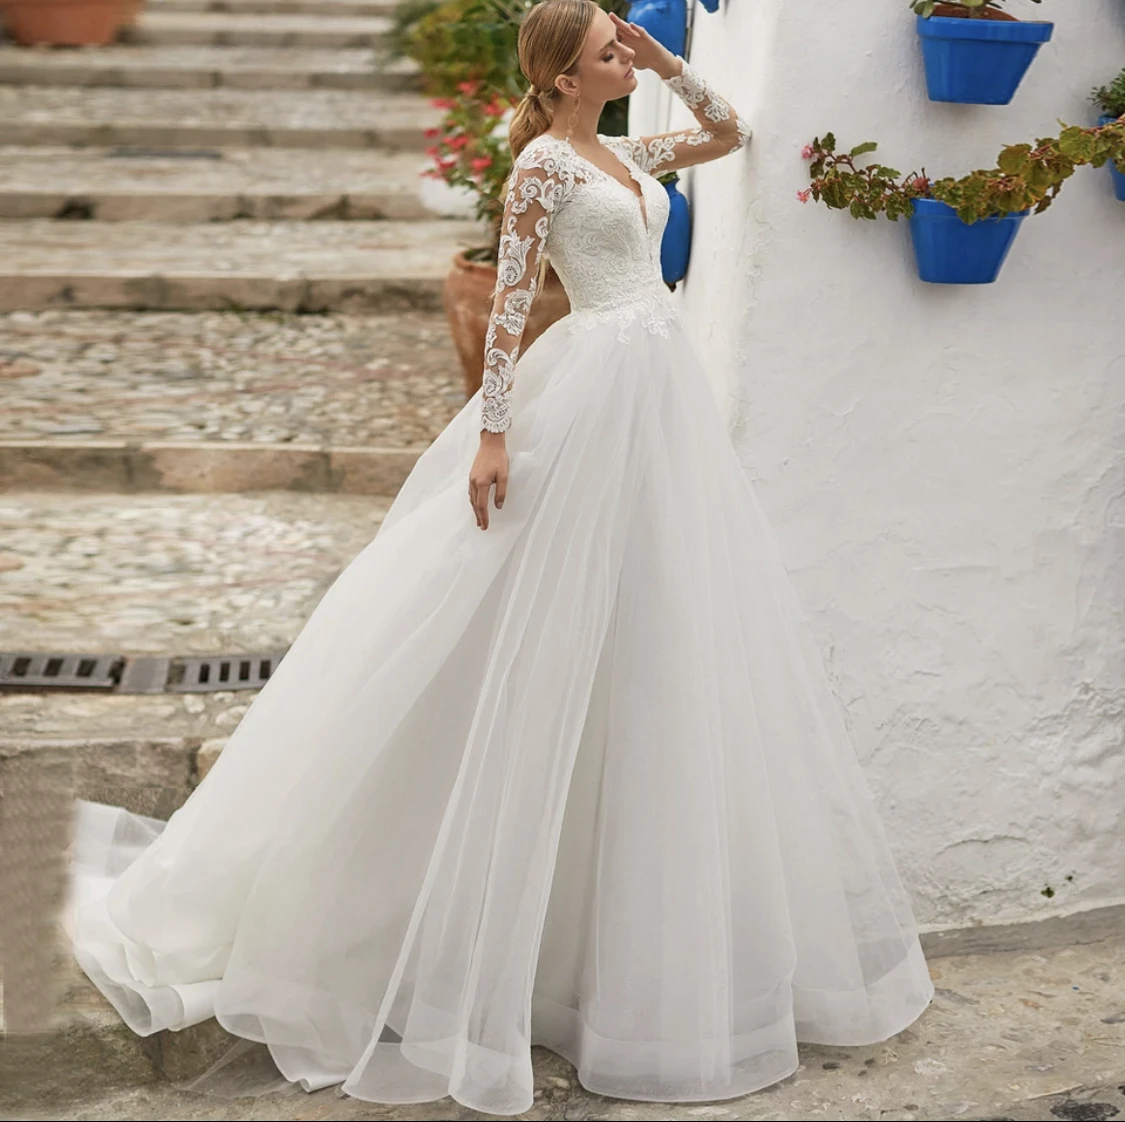 

Vestidos de Novia Принцесса бальное платье Тюль Свадебные платья 2022 размера плюс с длинным рукавом кружева халат De Mariee свадебное платье невесты